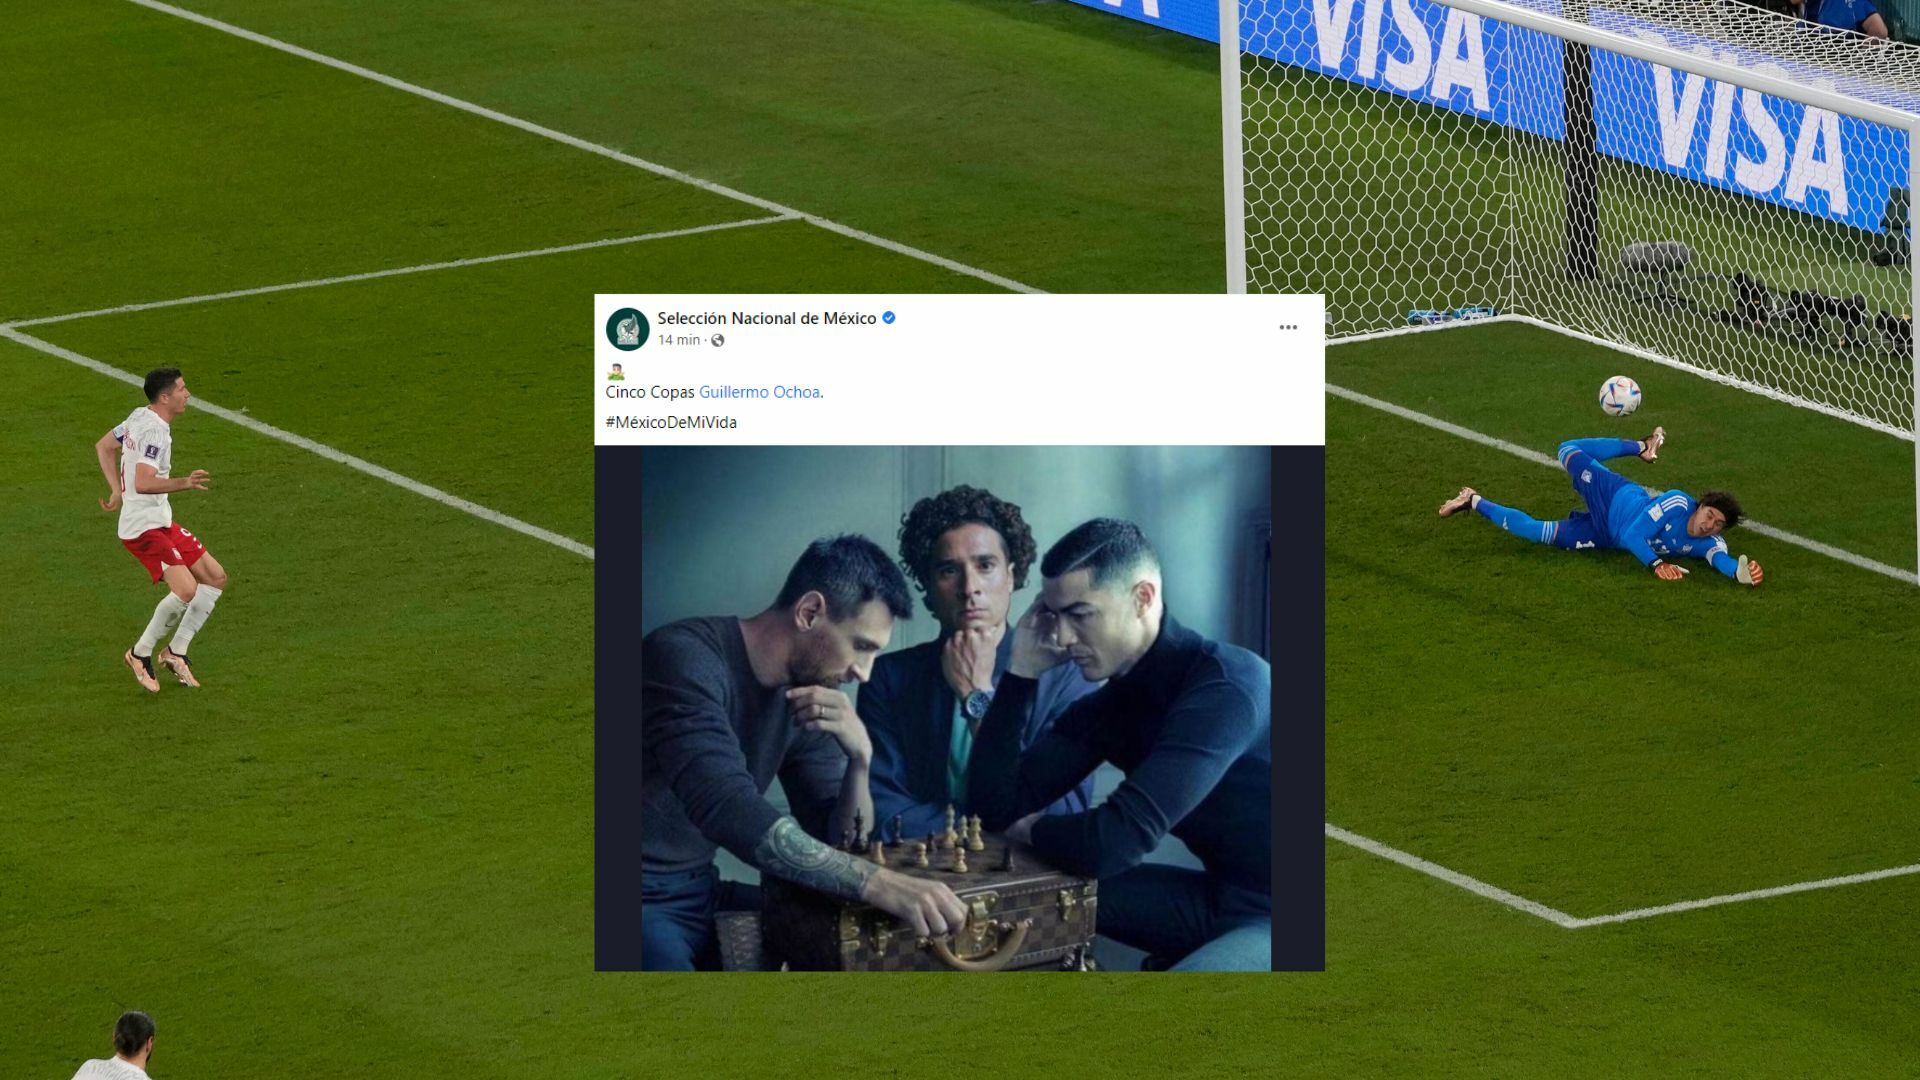 El Tricolor sienta a Guillermo Ochoa junto a Cristiano y Messi en foto de leyendas